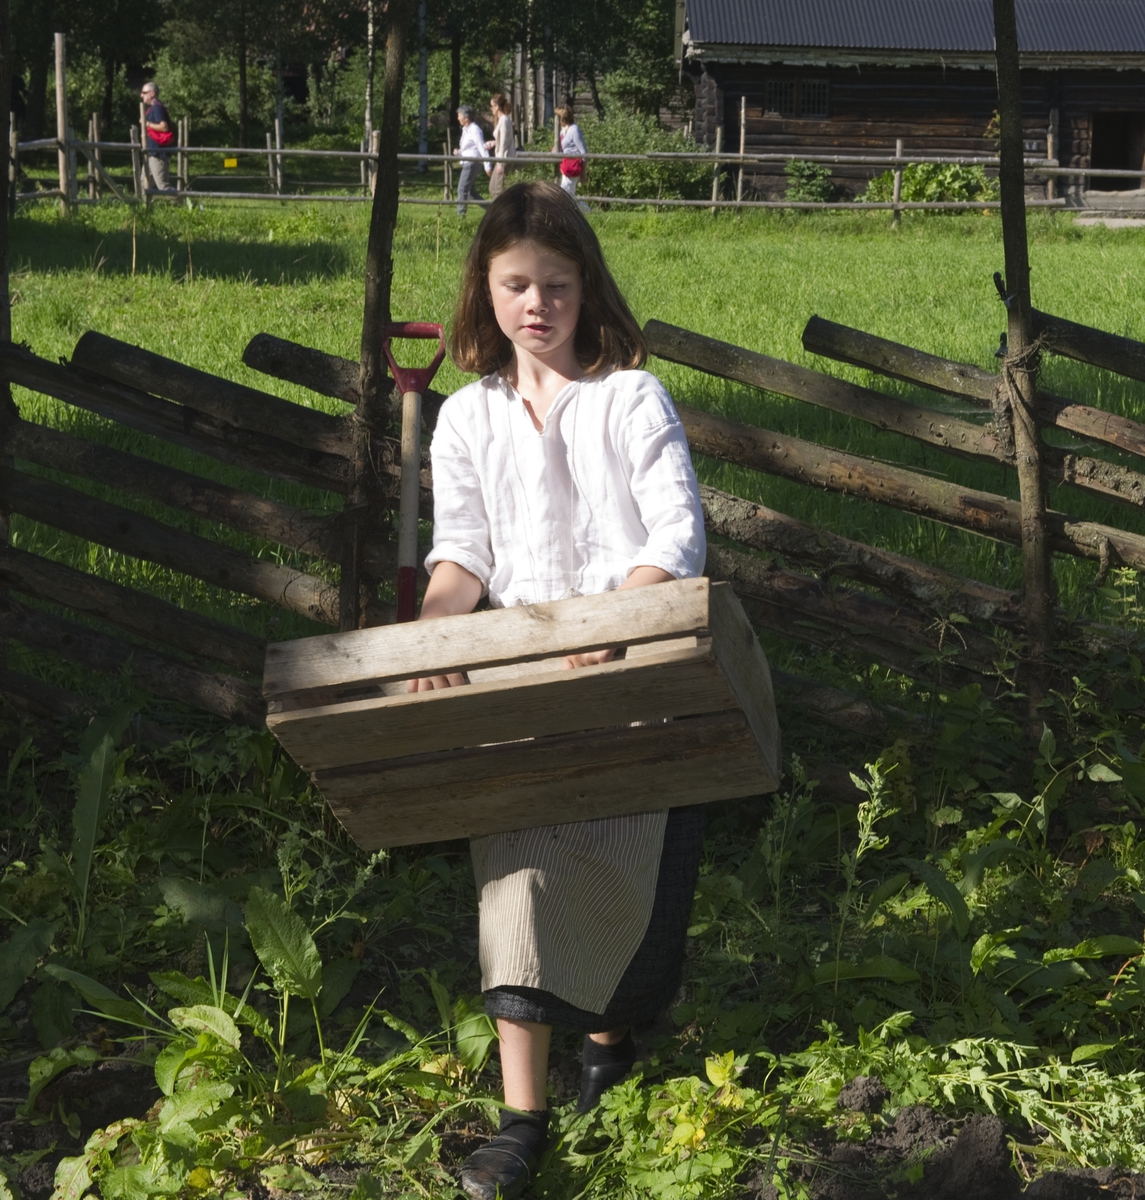 På historisk ferieskole får barn kjennskap til tradisjoner og historie gjennom opplevelser, lek og læring.

Jente med kasse for innhøsting fra potetåkeren.